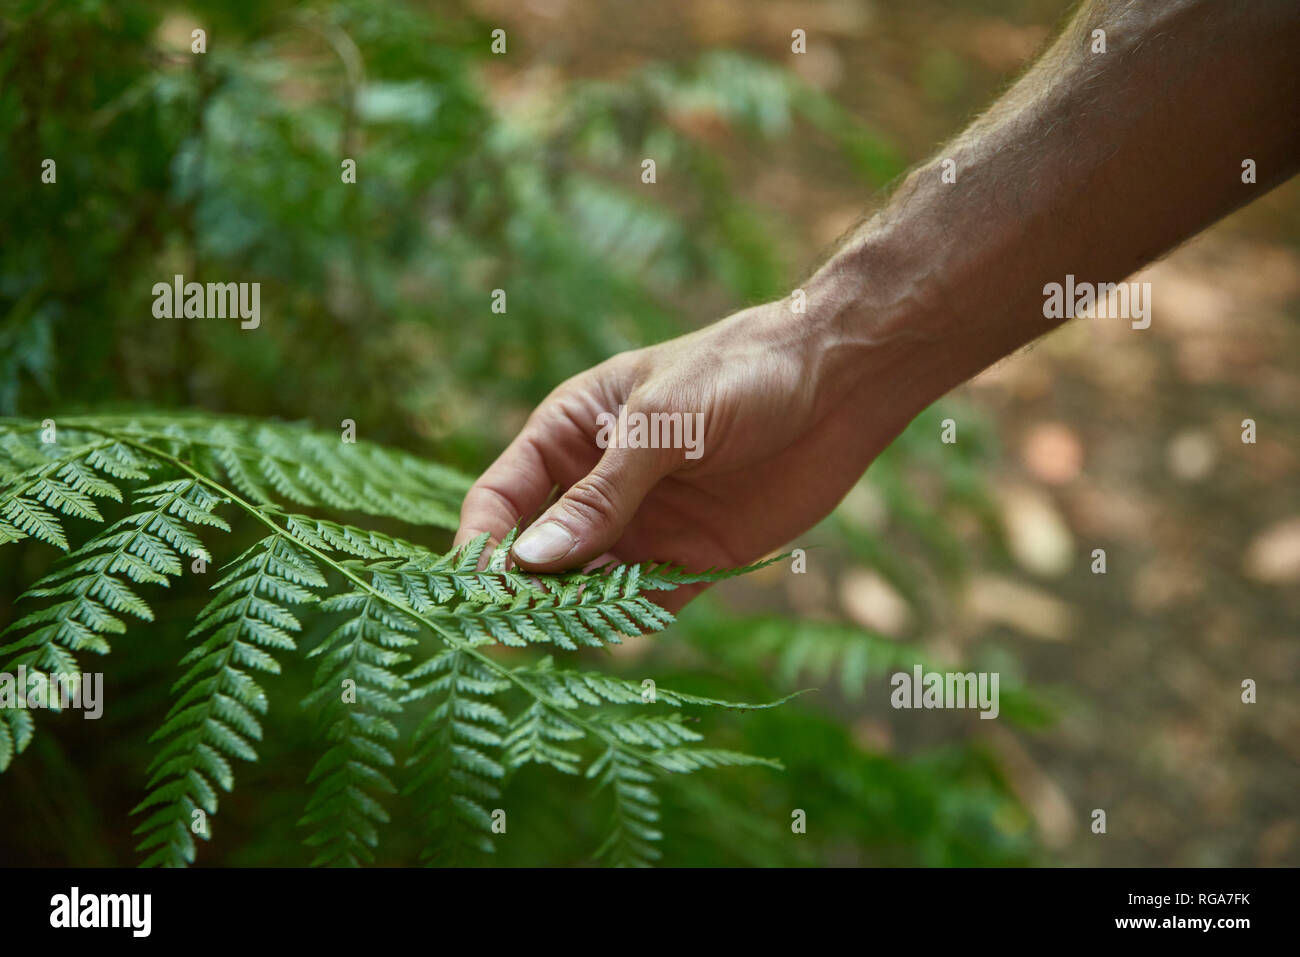 Spanien, Kanarische Inseln, La Palma, Nahaufnahme einer Hand berühren, grünen Wald fern Blatt Stockfoto